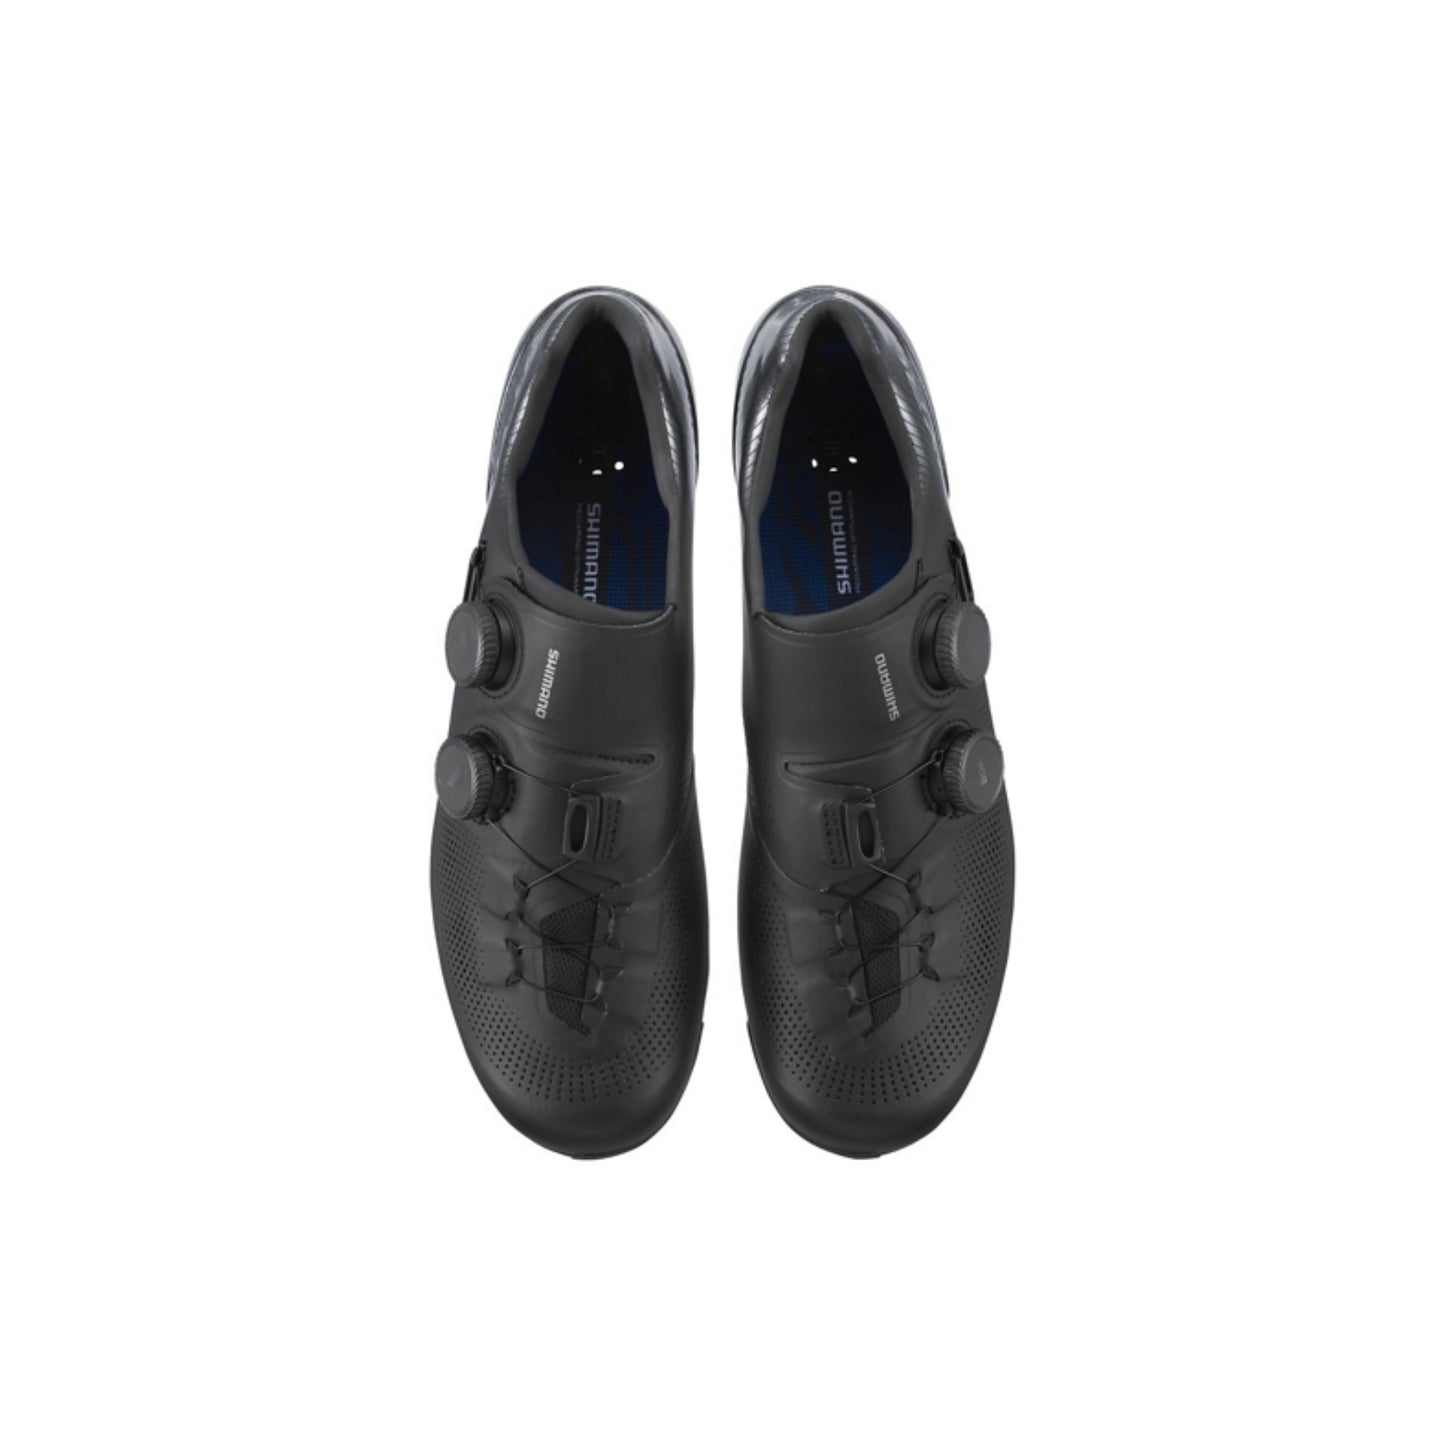 Zapatillas Shimano RC903 S-Phyre-Black